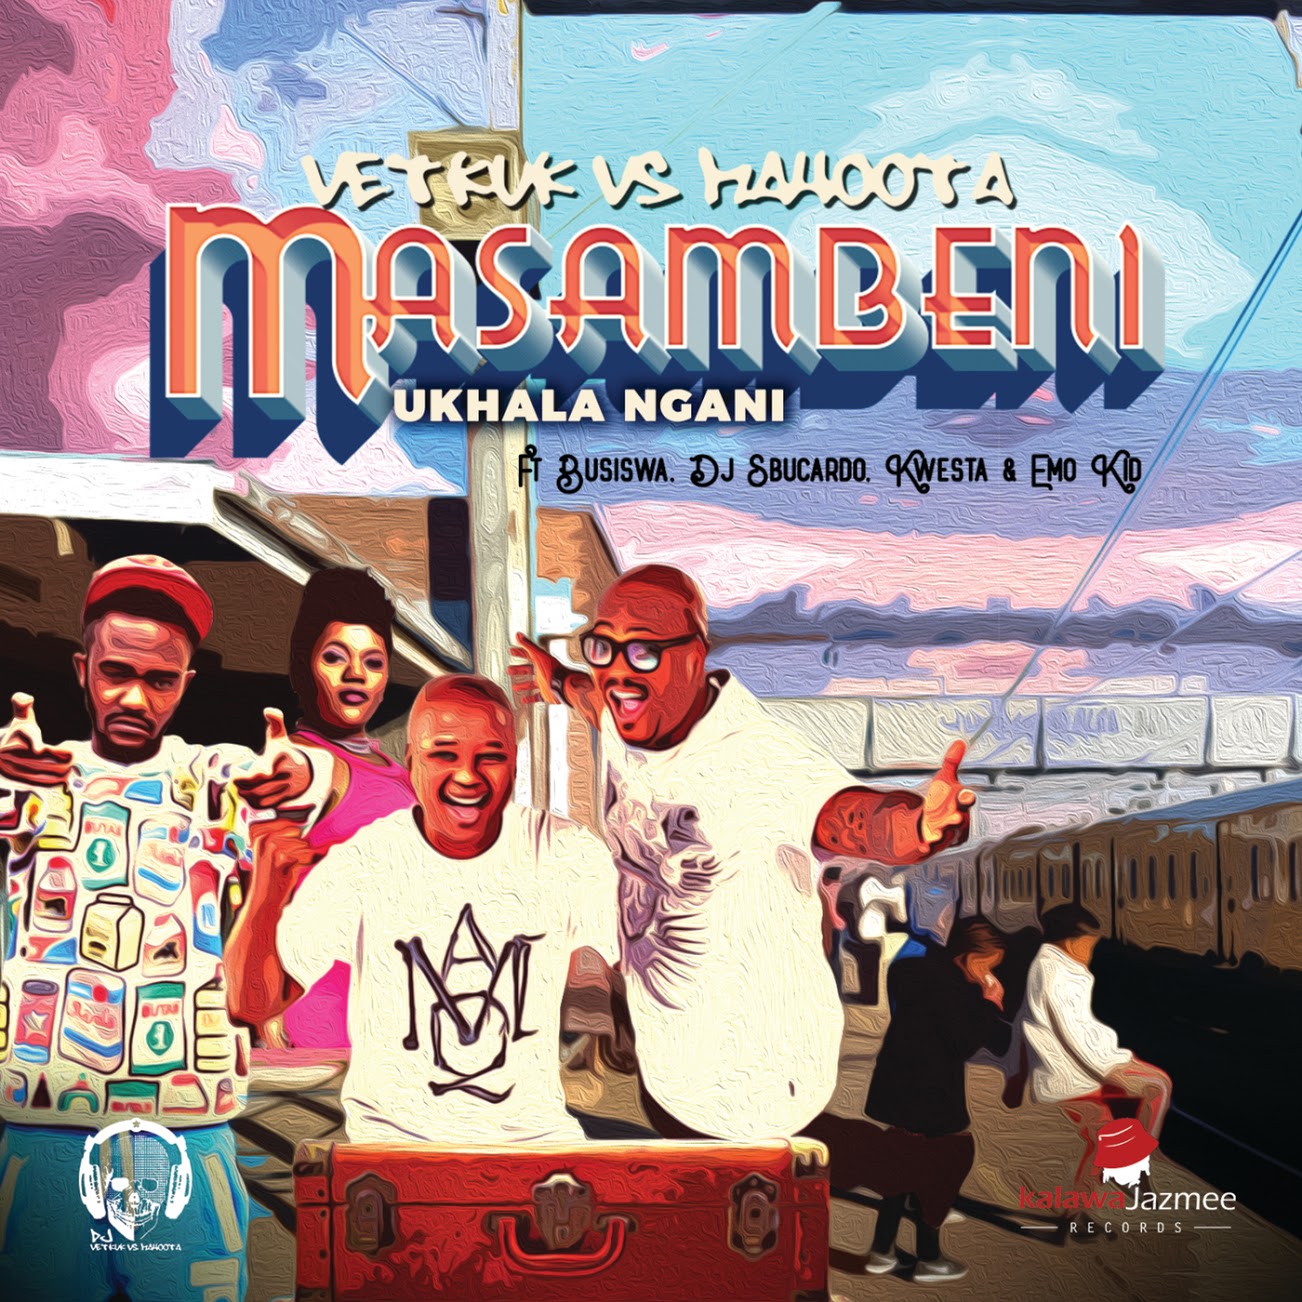 DJ Vetkuk Vs. Mahoota Ft. Busiswa, DJ Sbucardo, Kwesta & Emo Kid - Masambeni (Ukhala Ngani)